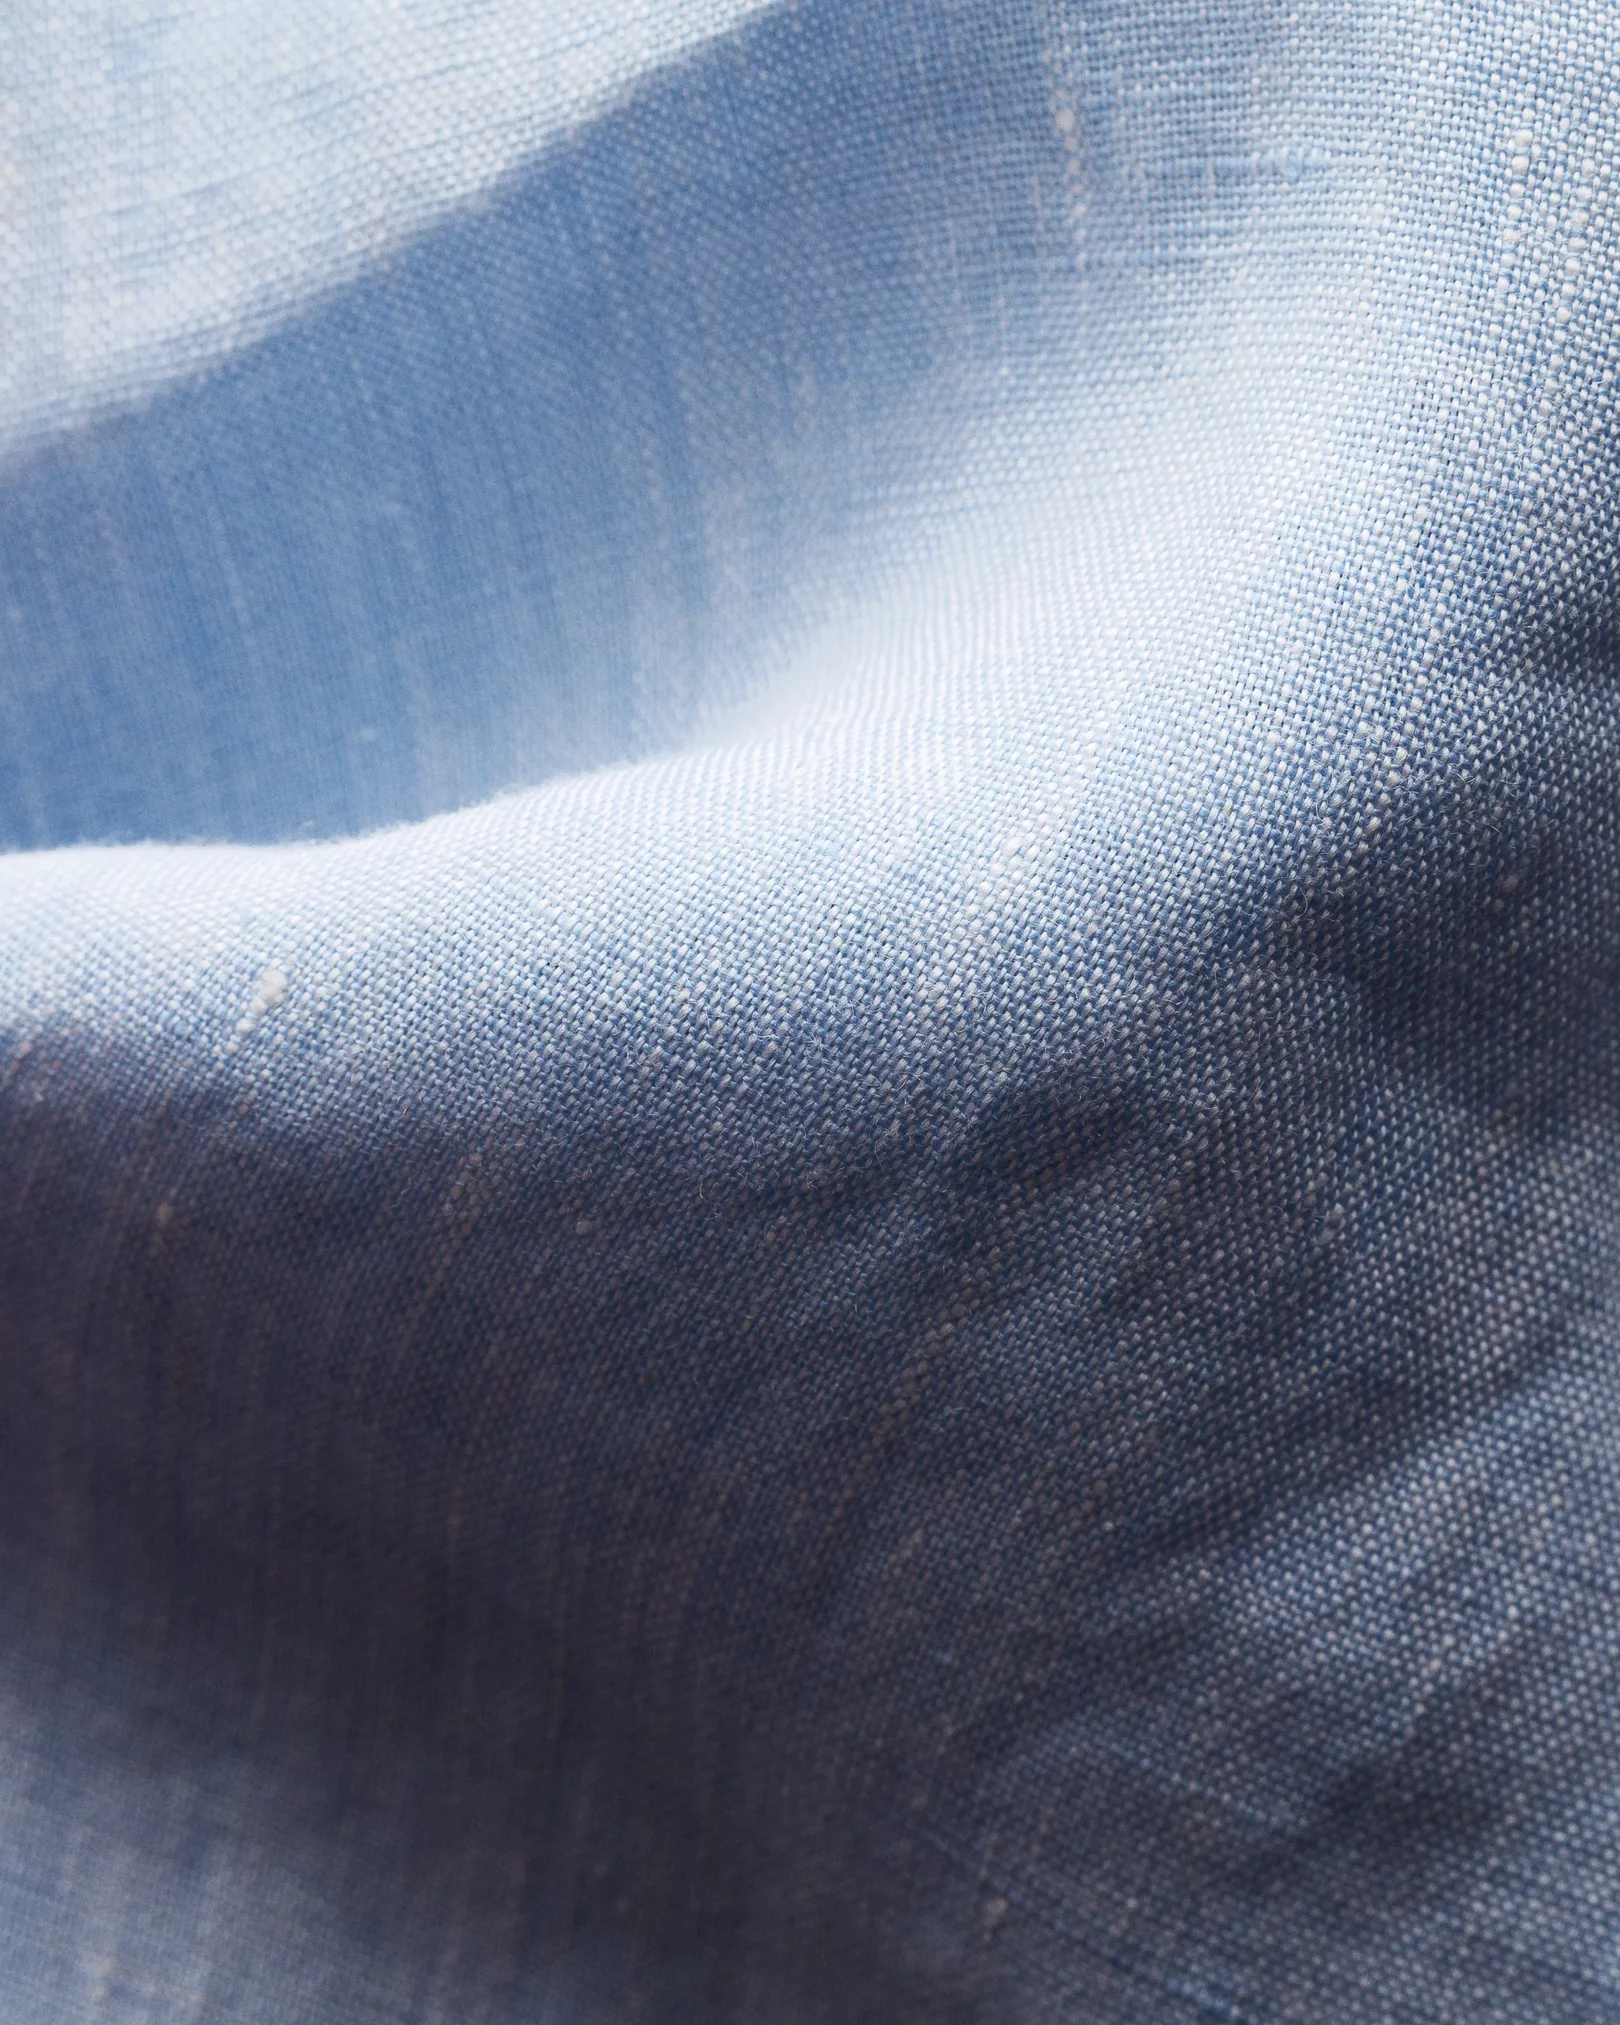 Eton - blue linen shirt wide spread collar